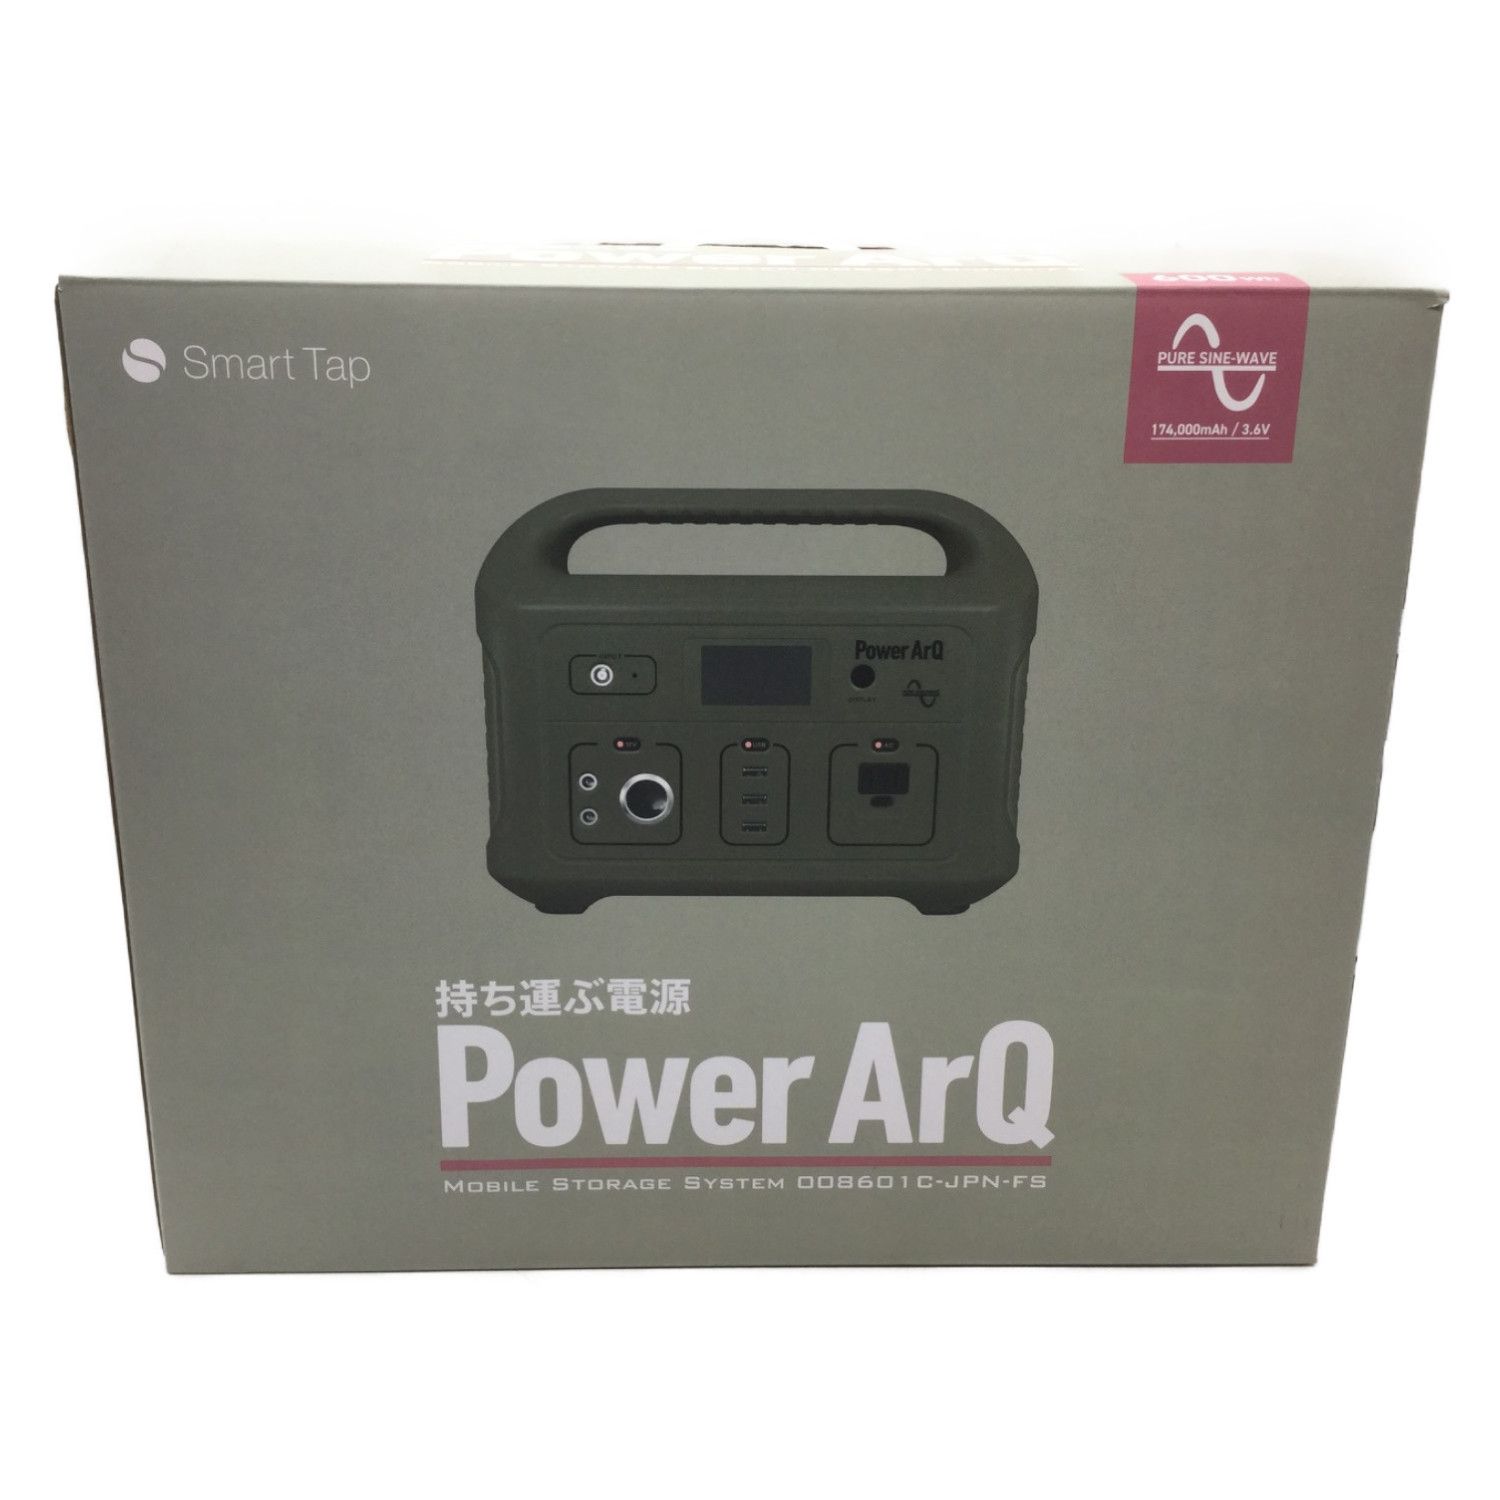 Smart Tap (スマートタップ) ポータブル電源 PowerArQ オリーブ 